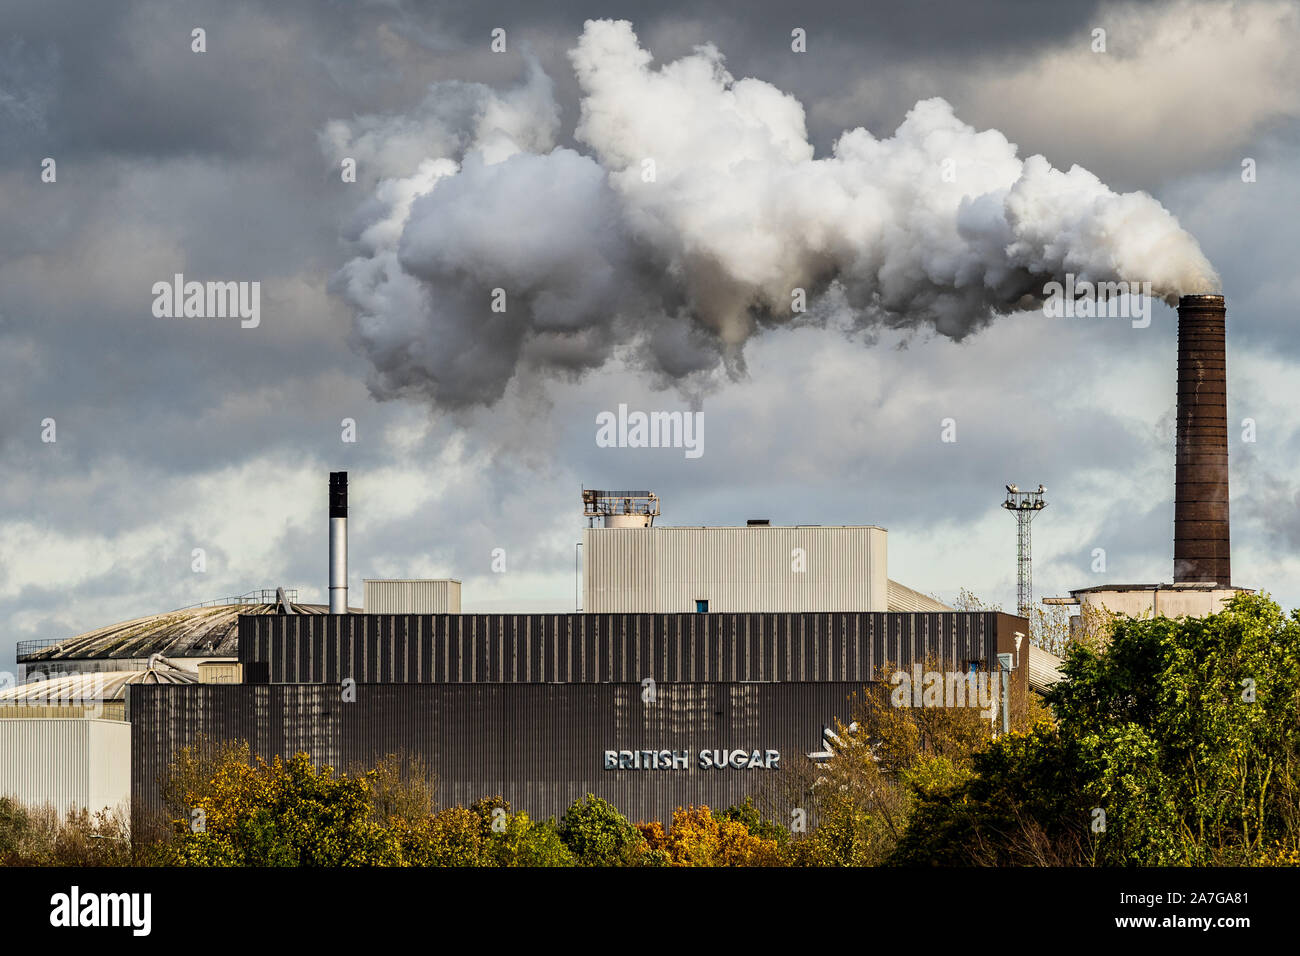 Emissionen der UK Factory - Schornsteine der Zuckerrübenfabrik - Dampf steigt aus der britischen Zuckerfabrik in Bury St Edmunds Suffolk UK Stockfoto